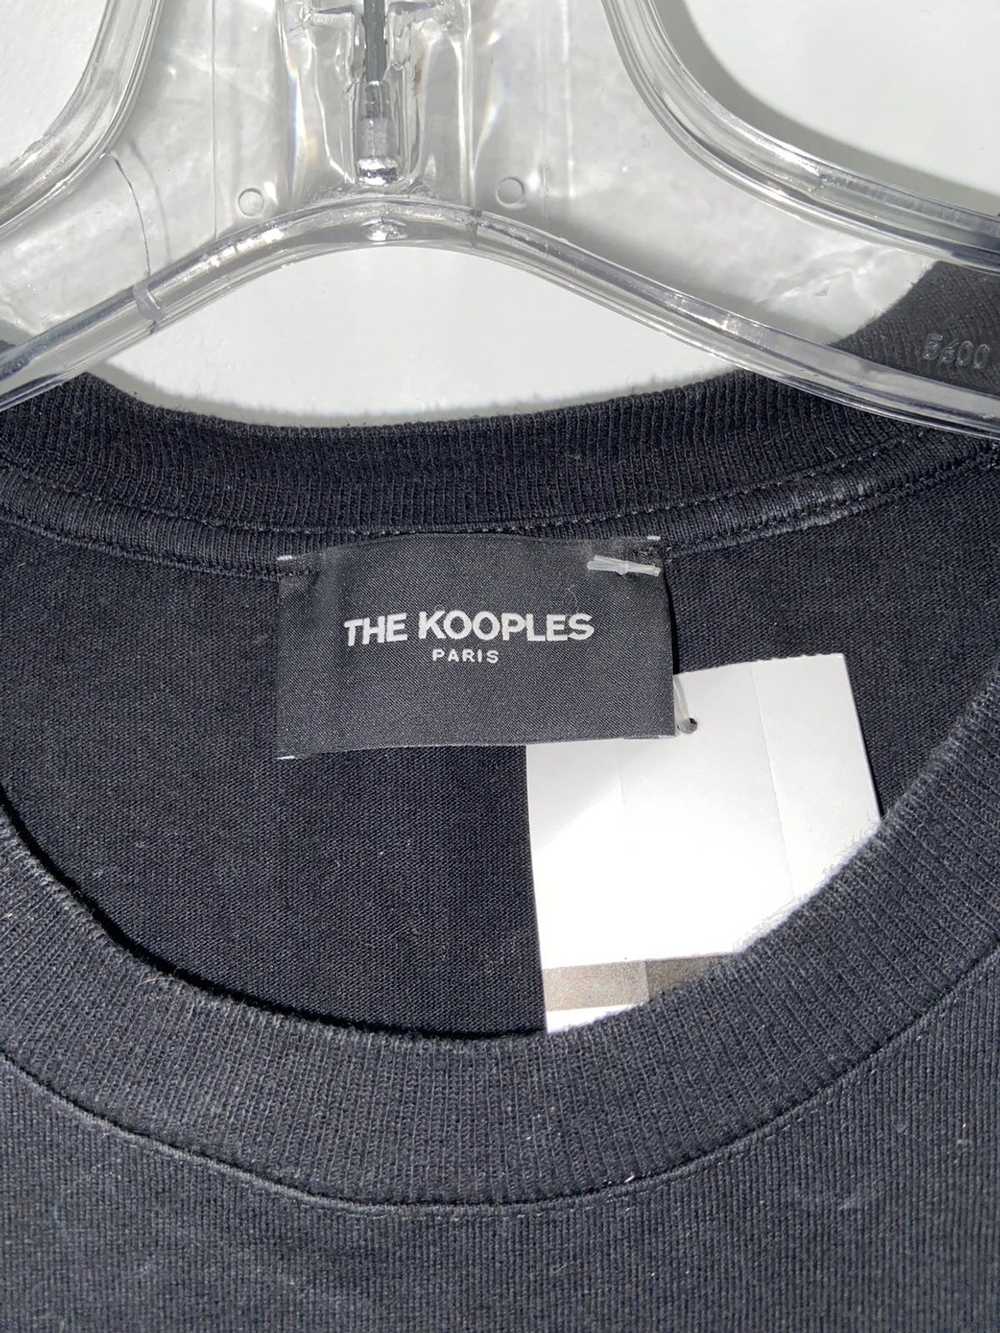 Designer × Streetwear × The Kooples The Kooples P… - image 3